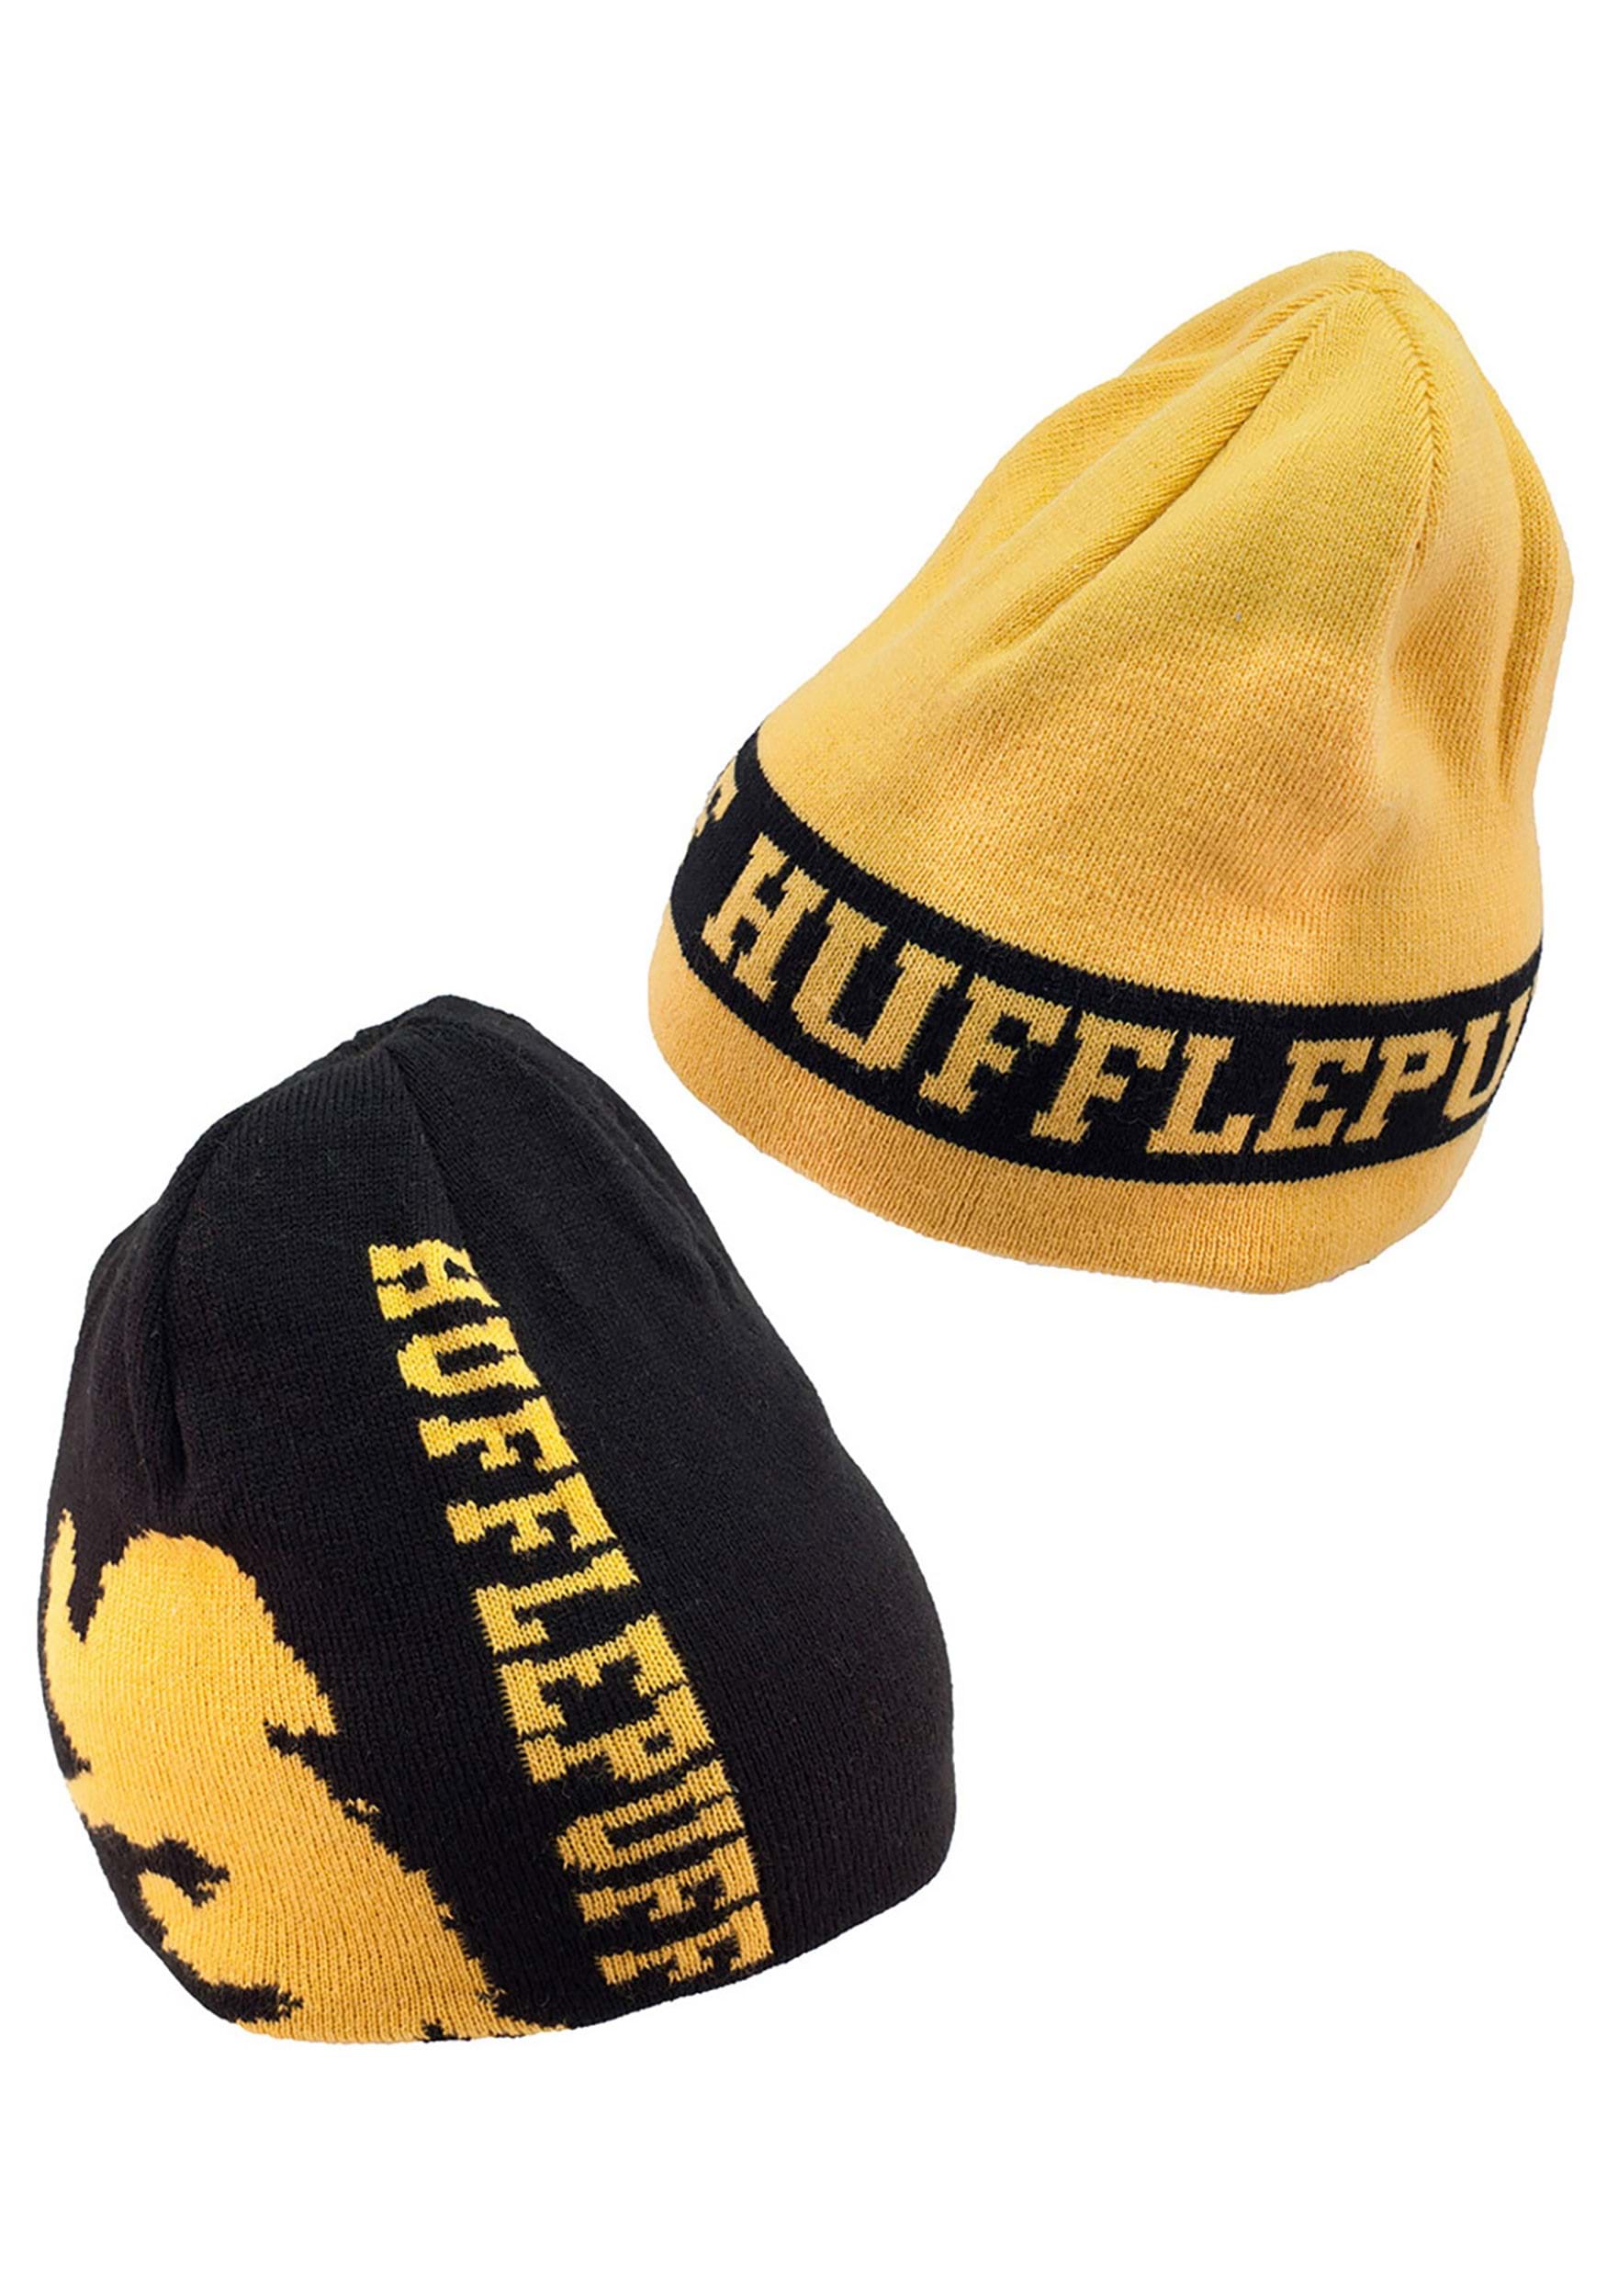 Hufflepuff Reversible Knit Yellow Beanie , Winter Beanies